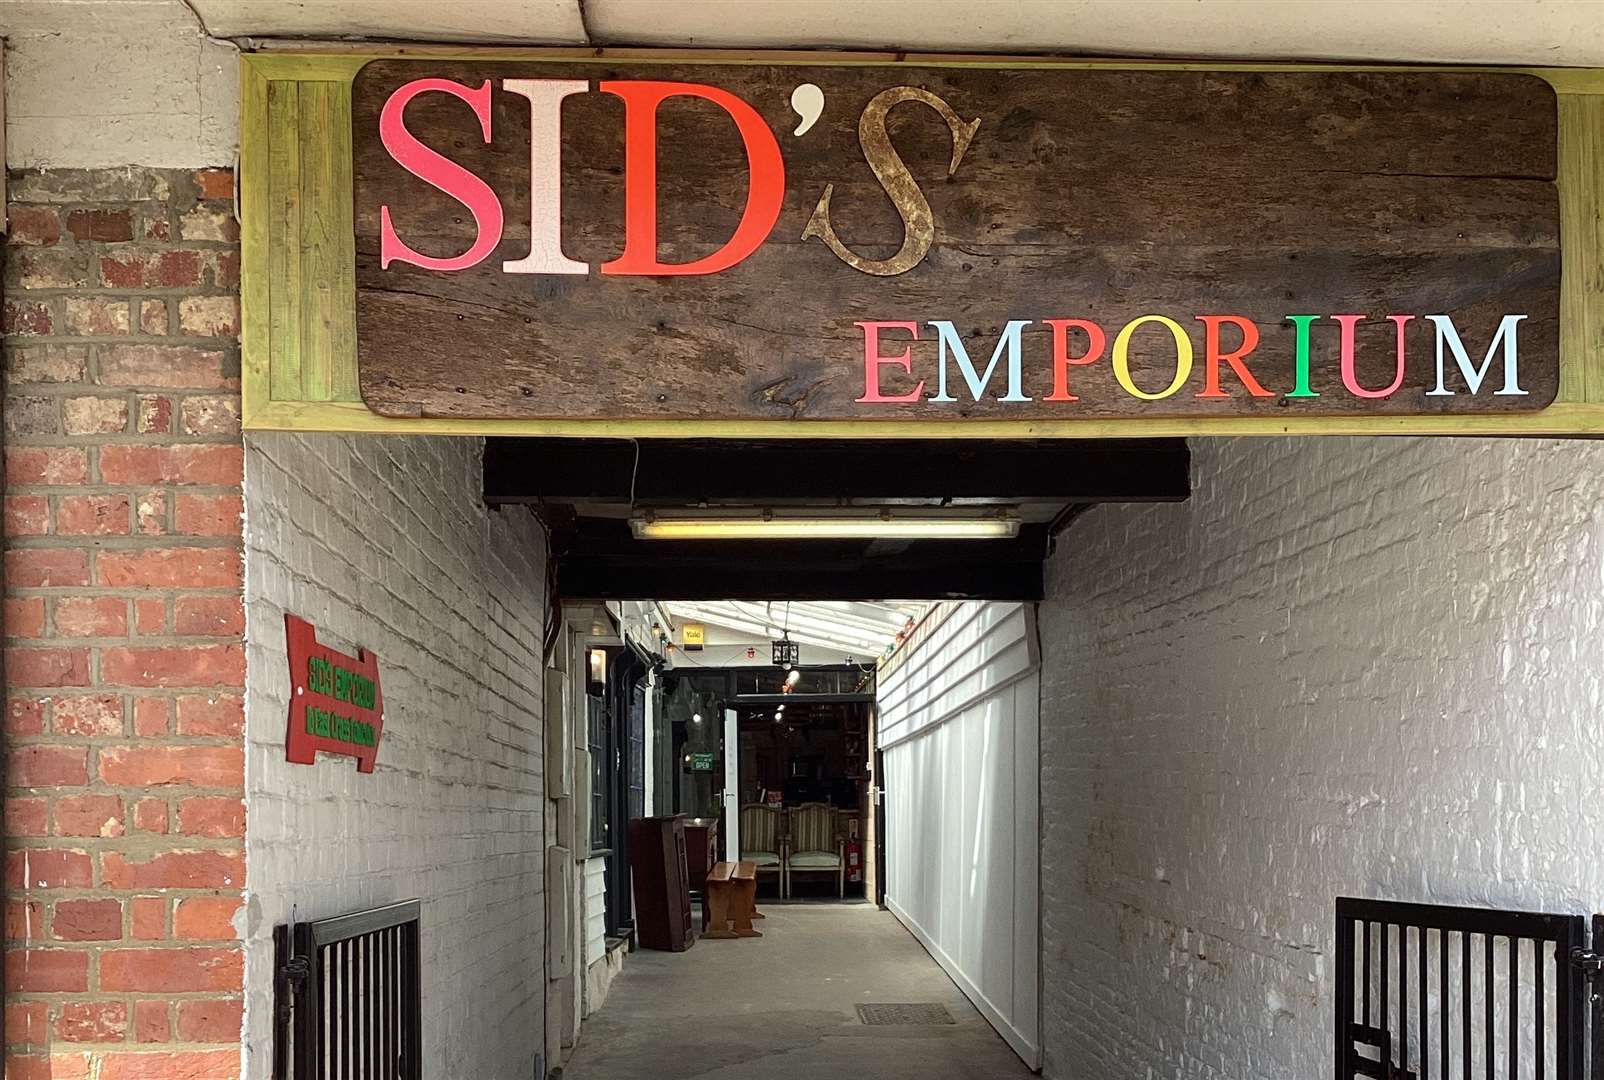 Sid's Emporium in East Cross, Tenterden